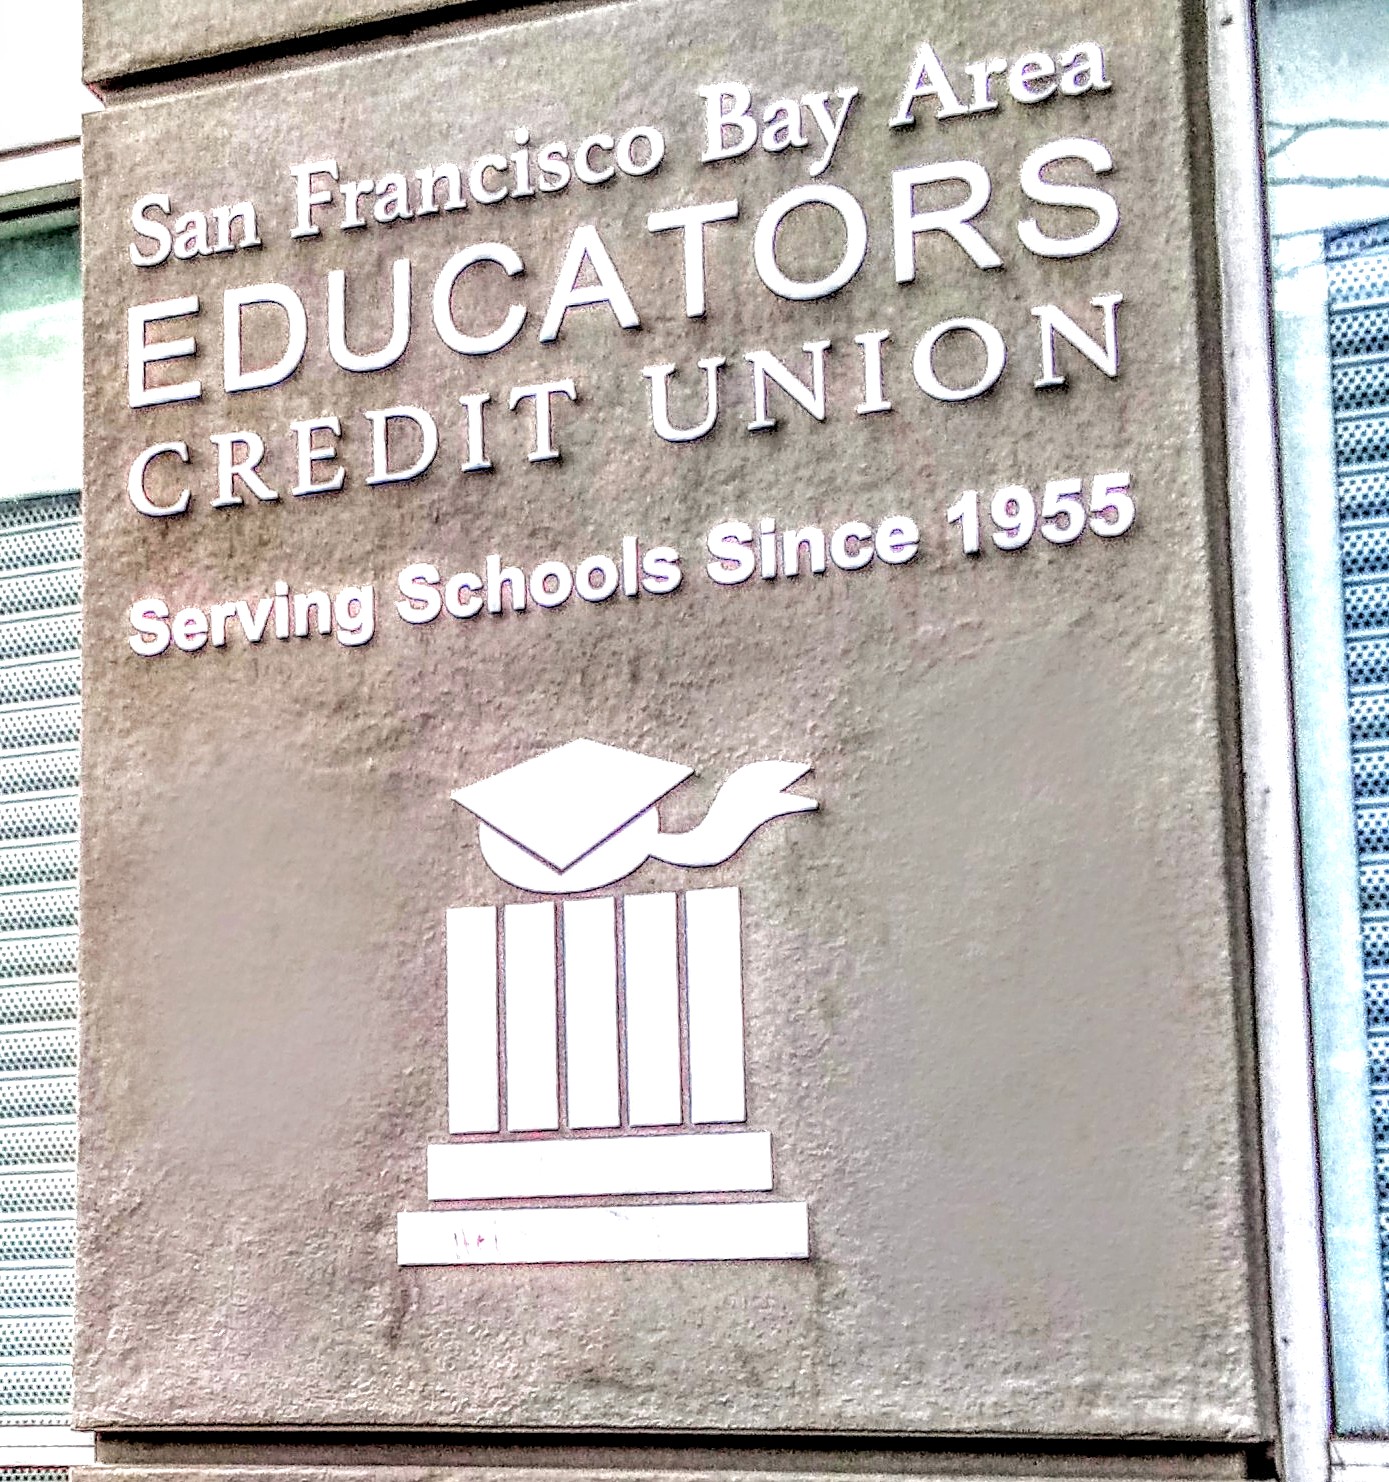 SF Bay Area Educators Credit Union